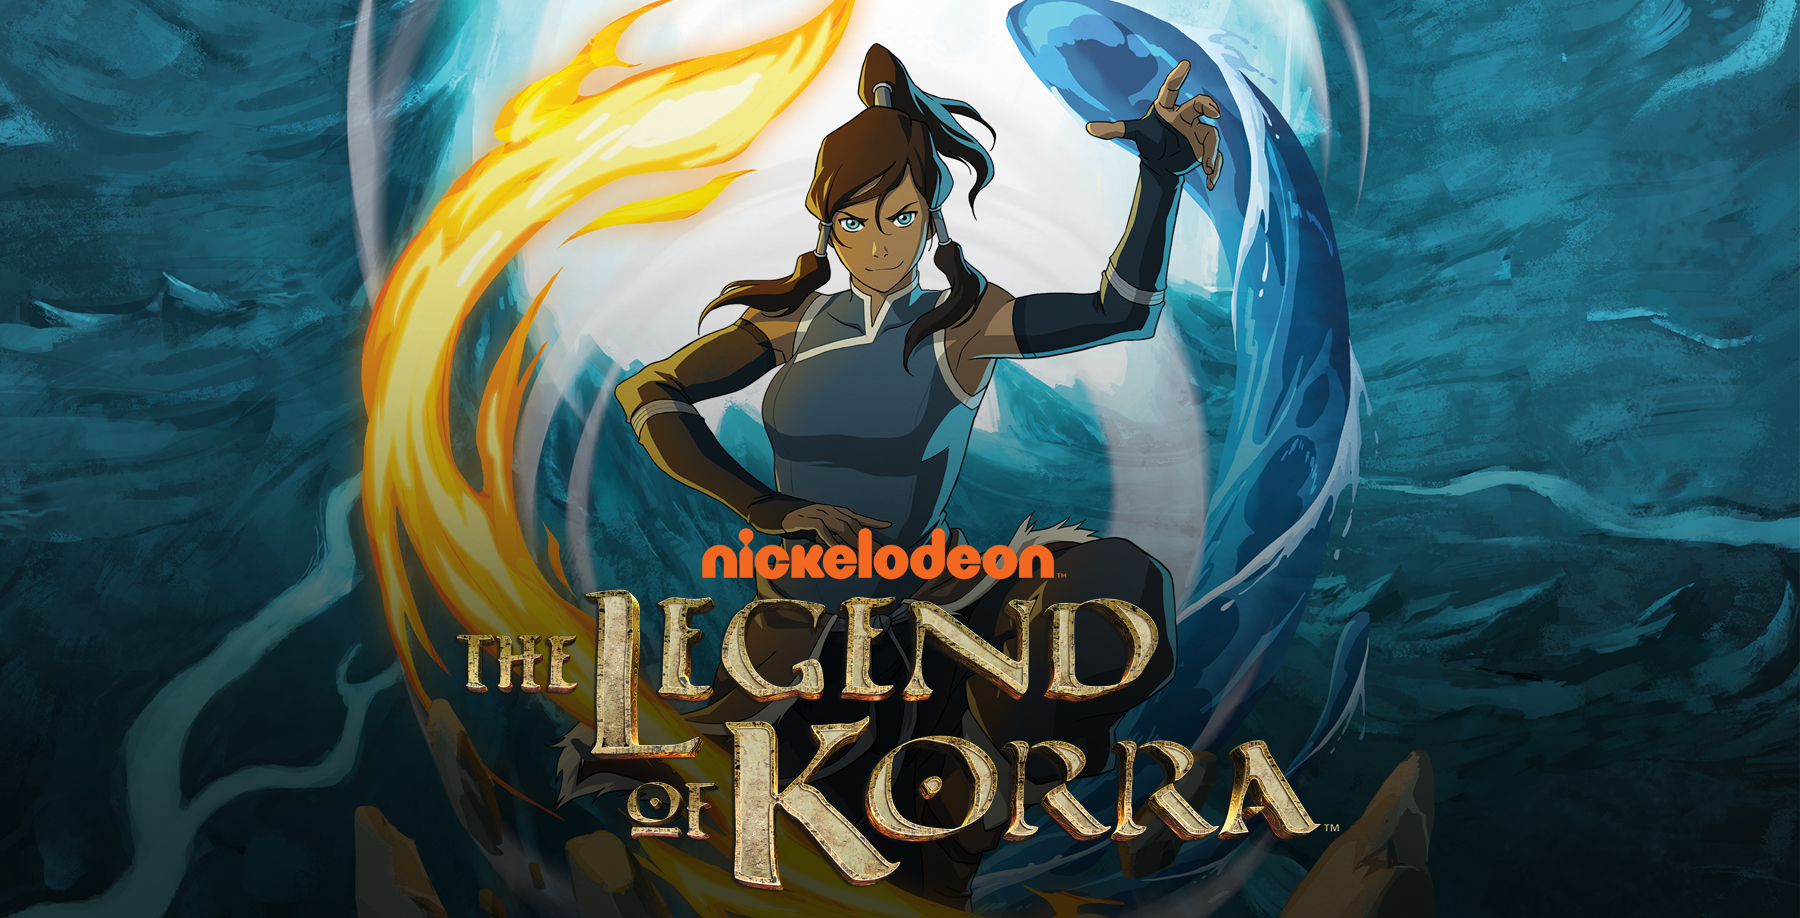 Avatar, la llegenda de la Korra